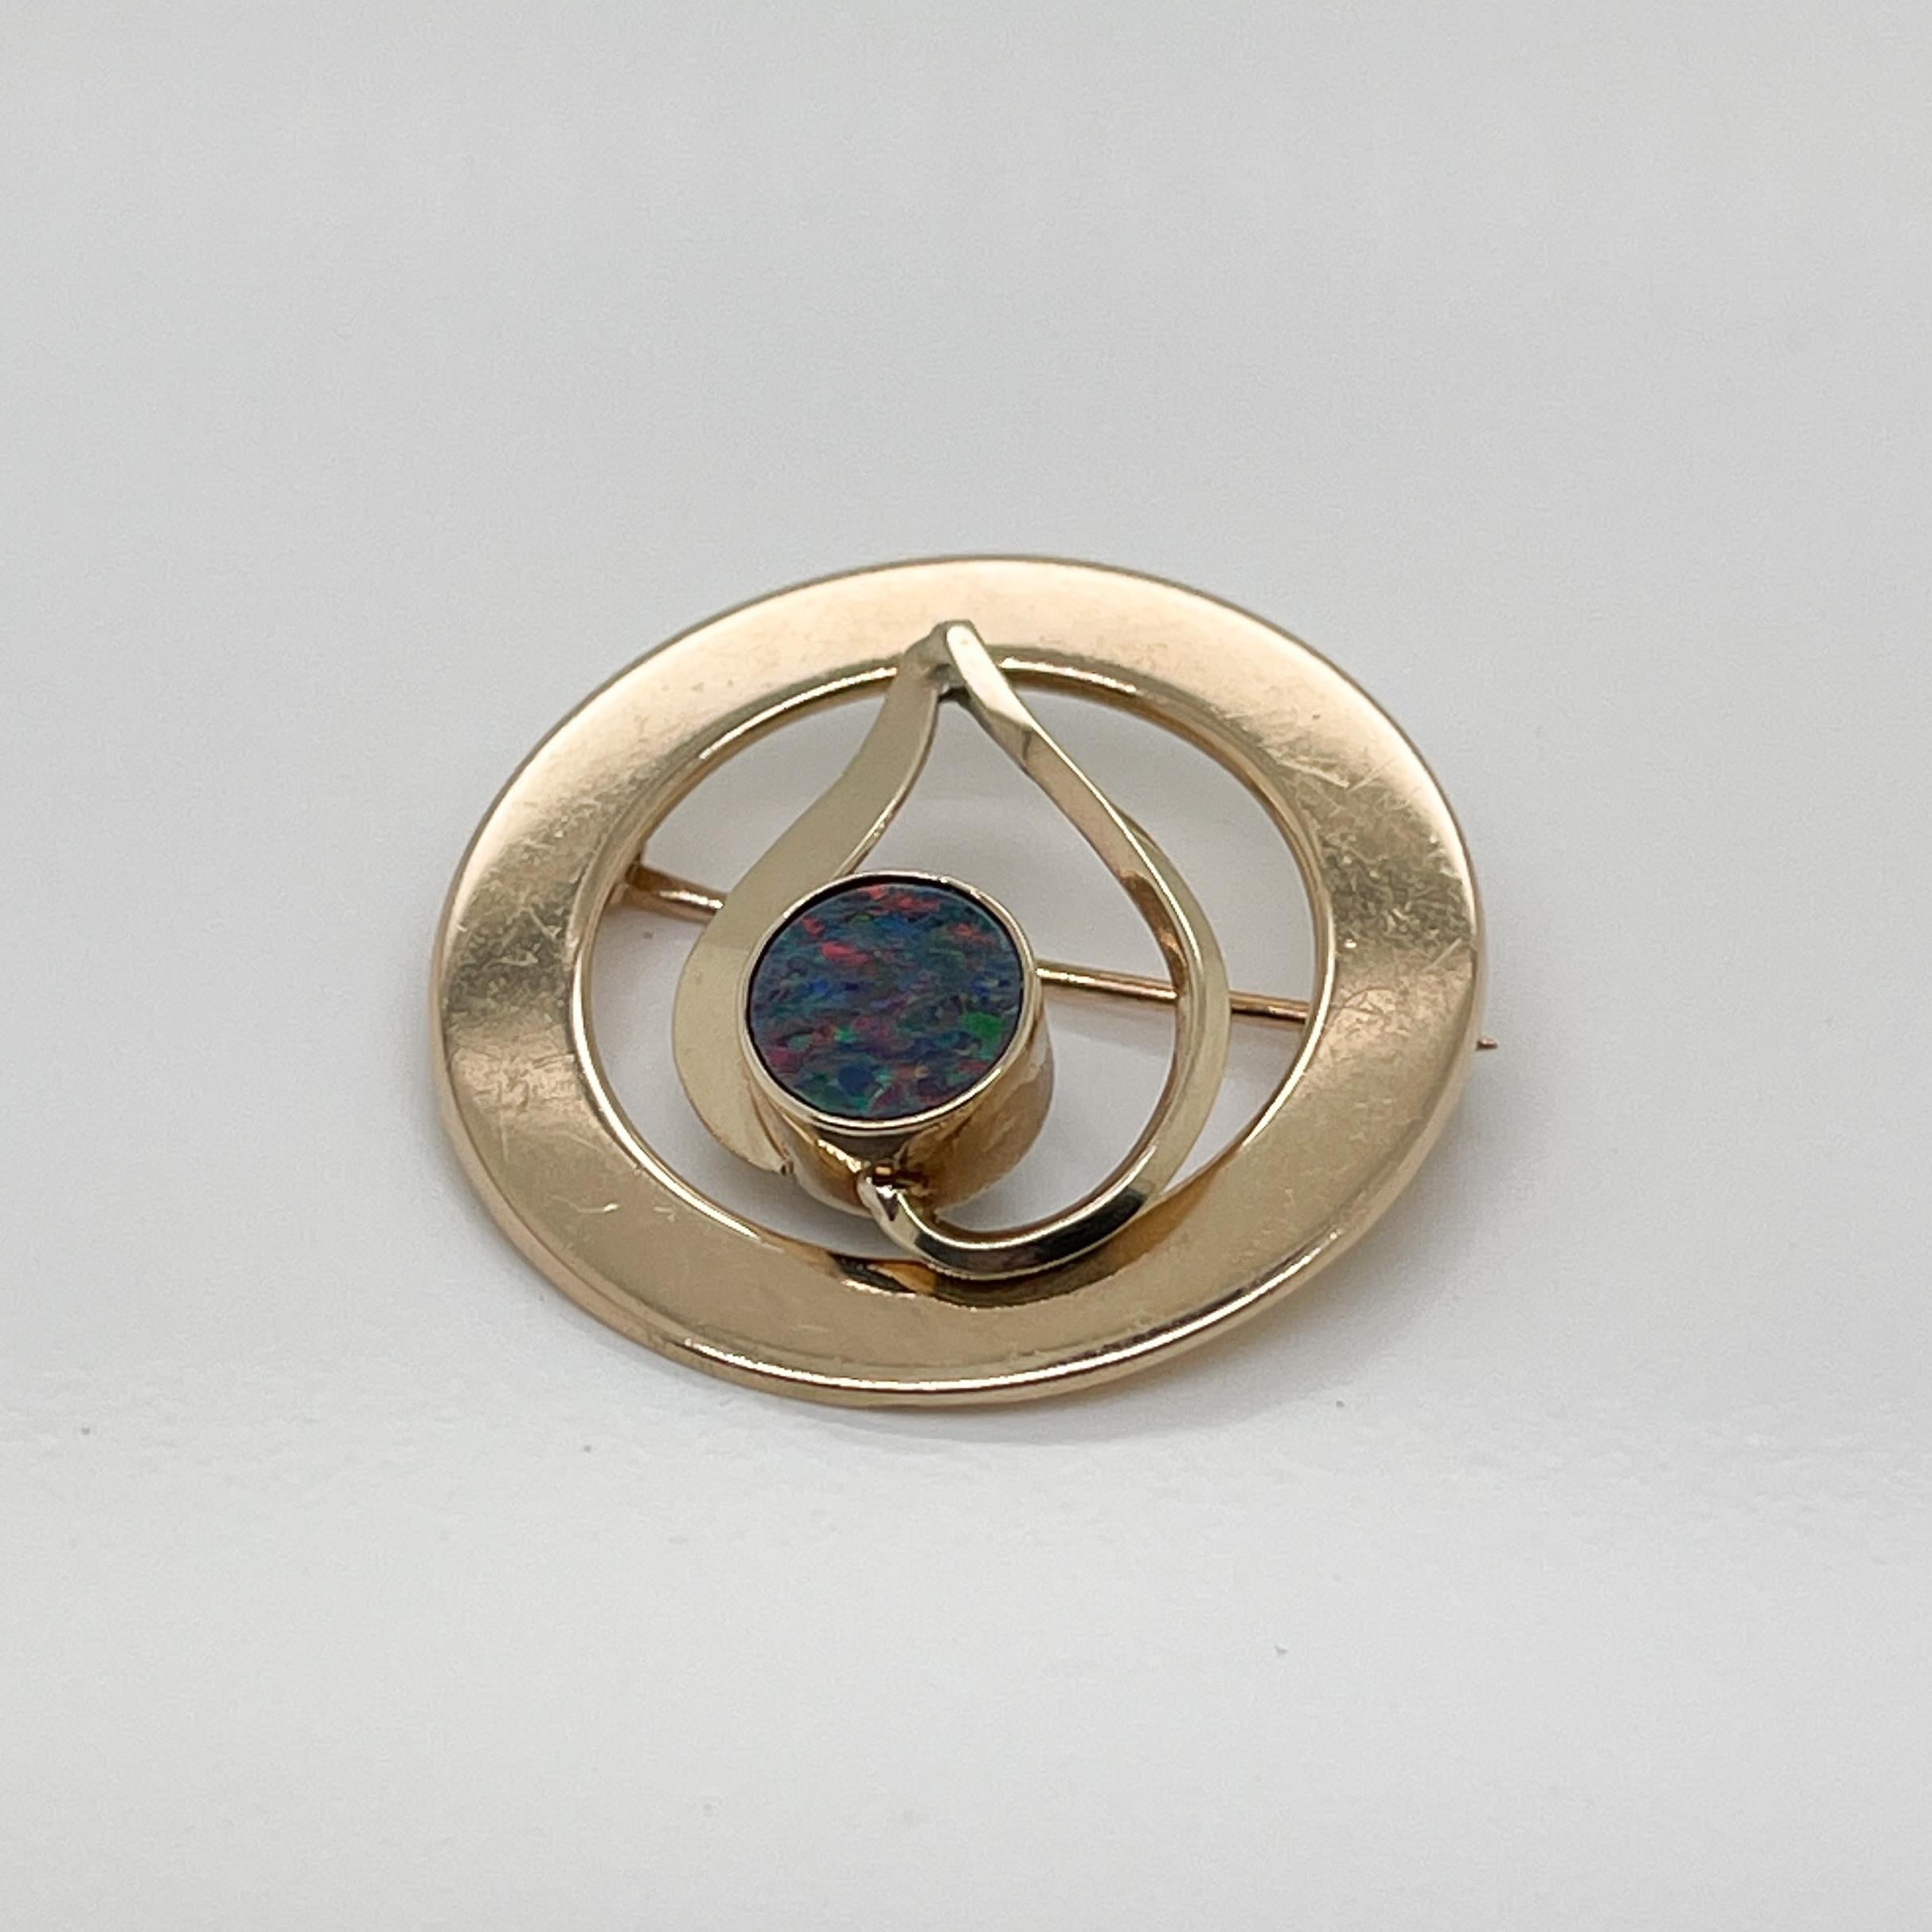 Eine sehr feine 14k Gold und australischen Opal Doublette Brosche oder Pin.

Mit einem runden Opal in 14-karätiger Goldfassung in umgekehrter Herzform, die von einem flachen goldenen Kreis umrahmt ist.  

Einfach eine grandiose Brosche!

Datum:
20.